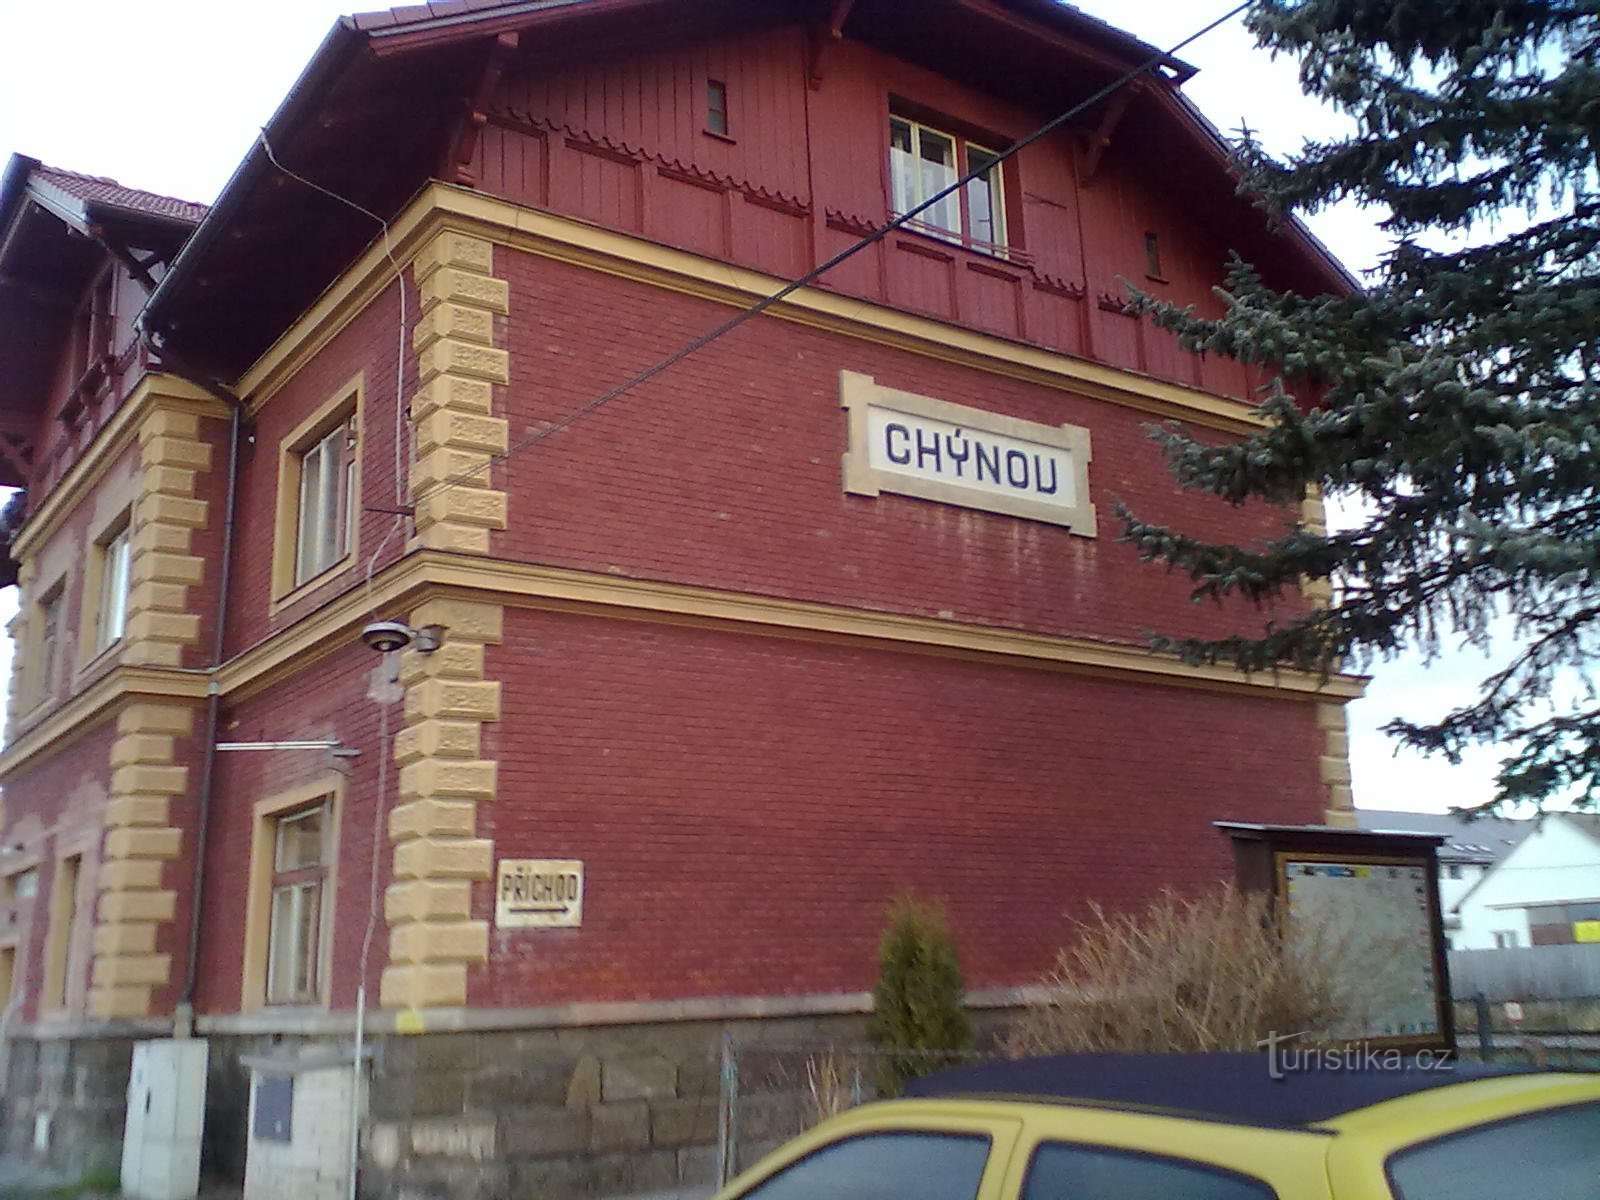 Inizio - Chýnovské nádraží.